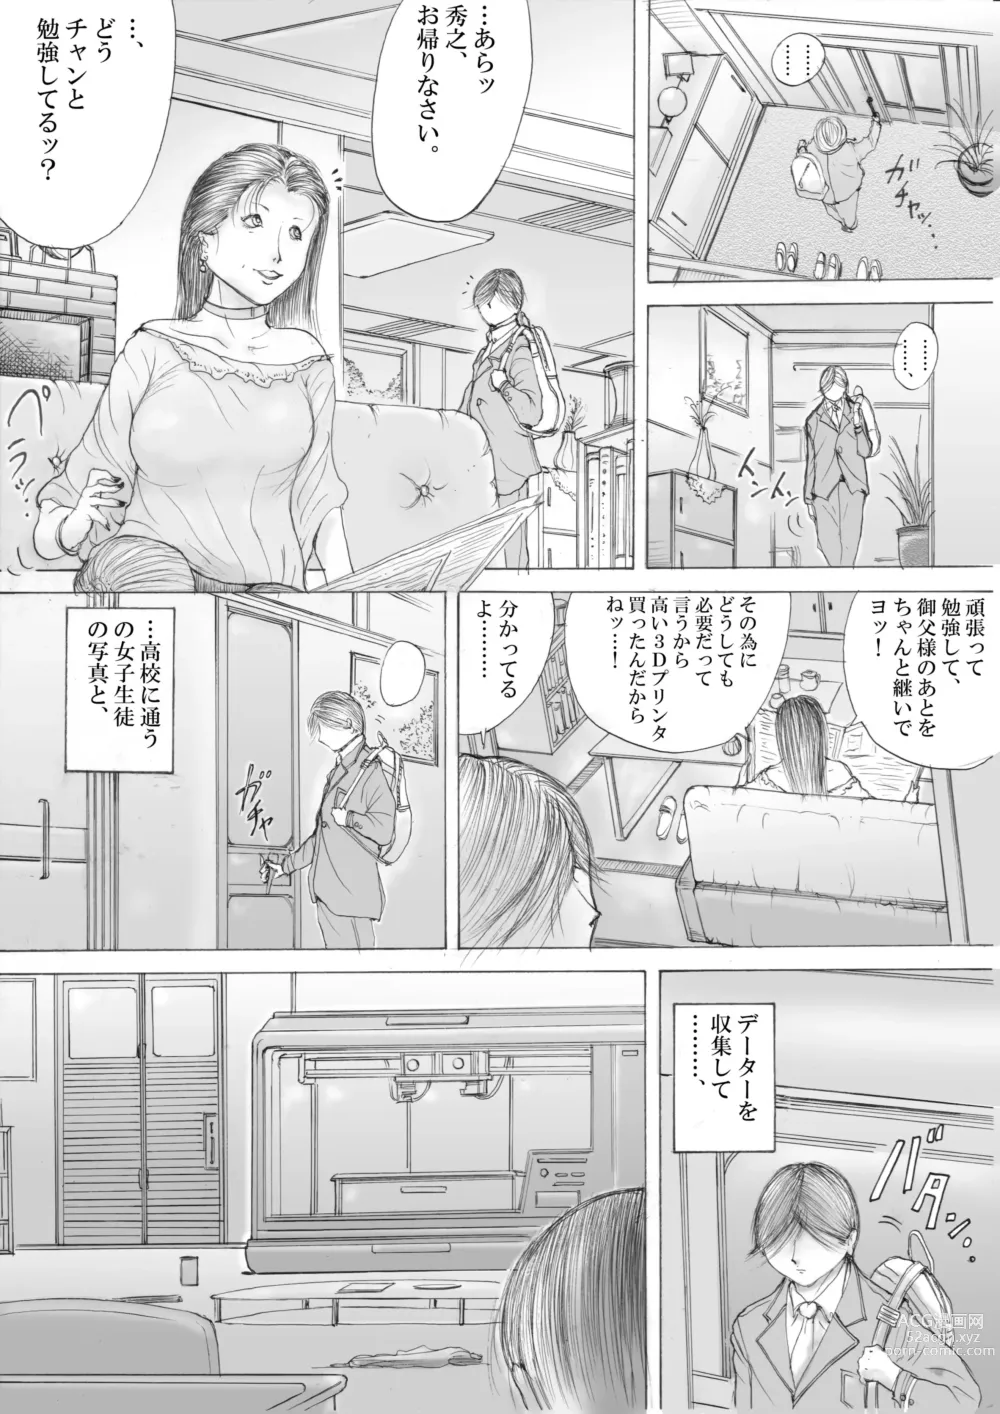 Page 5 of doujinshi Horror Manga 11